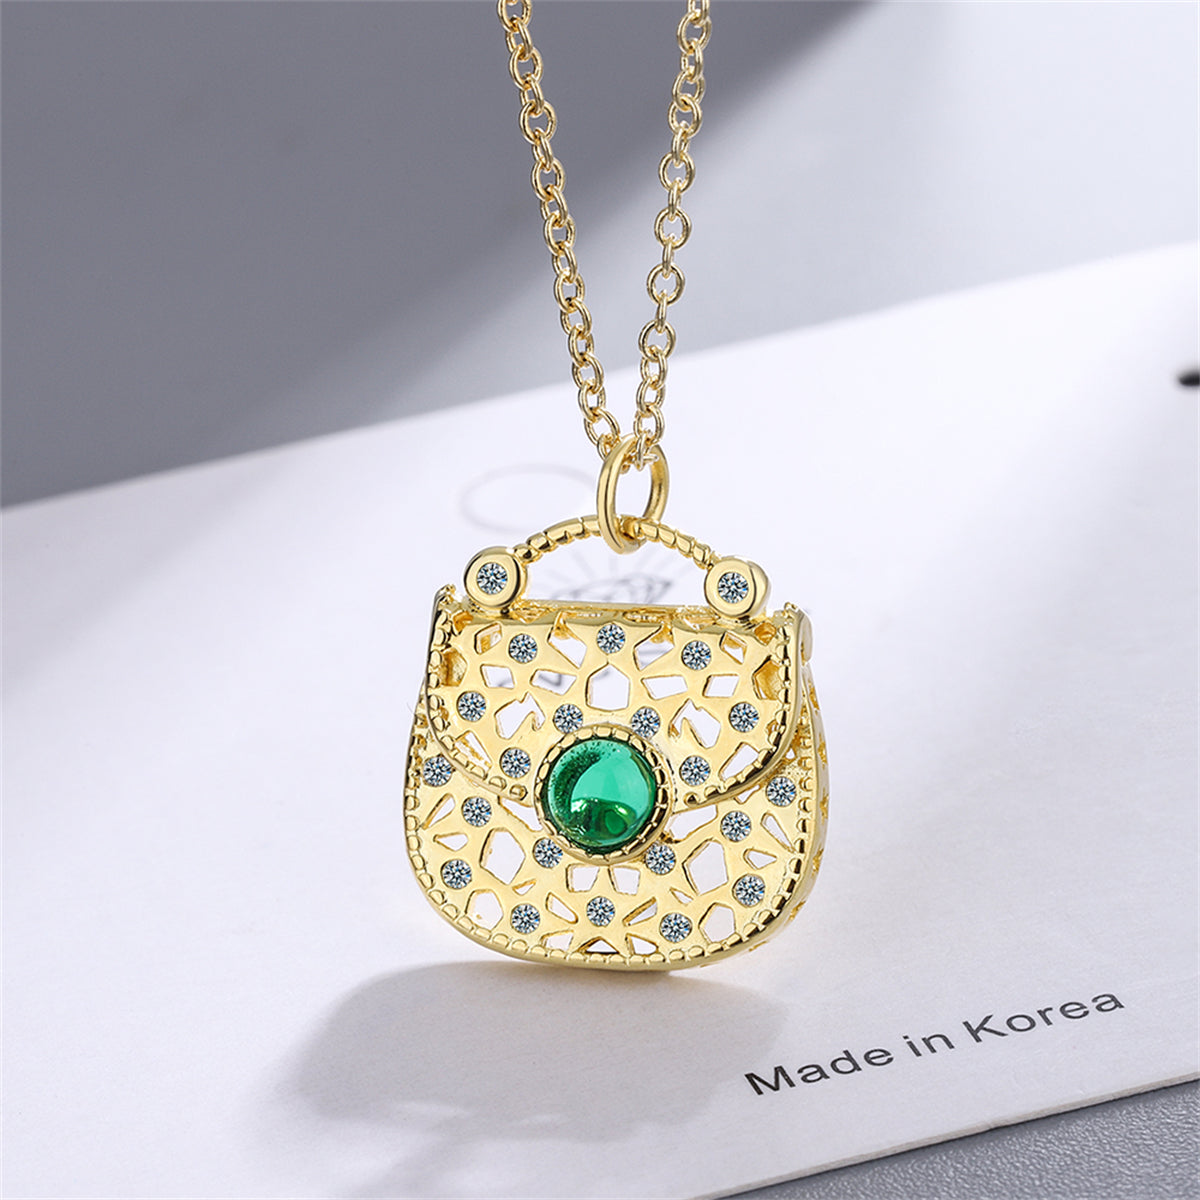 Green Moonstone & Cubic Zirconia Handbag Pendant Necklace